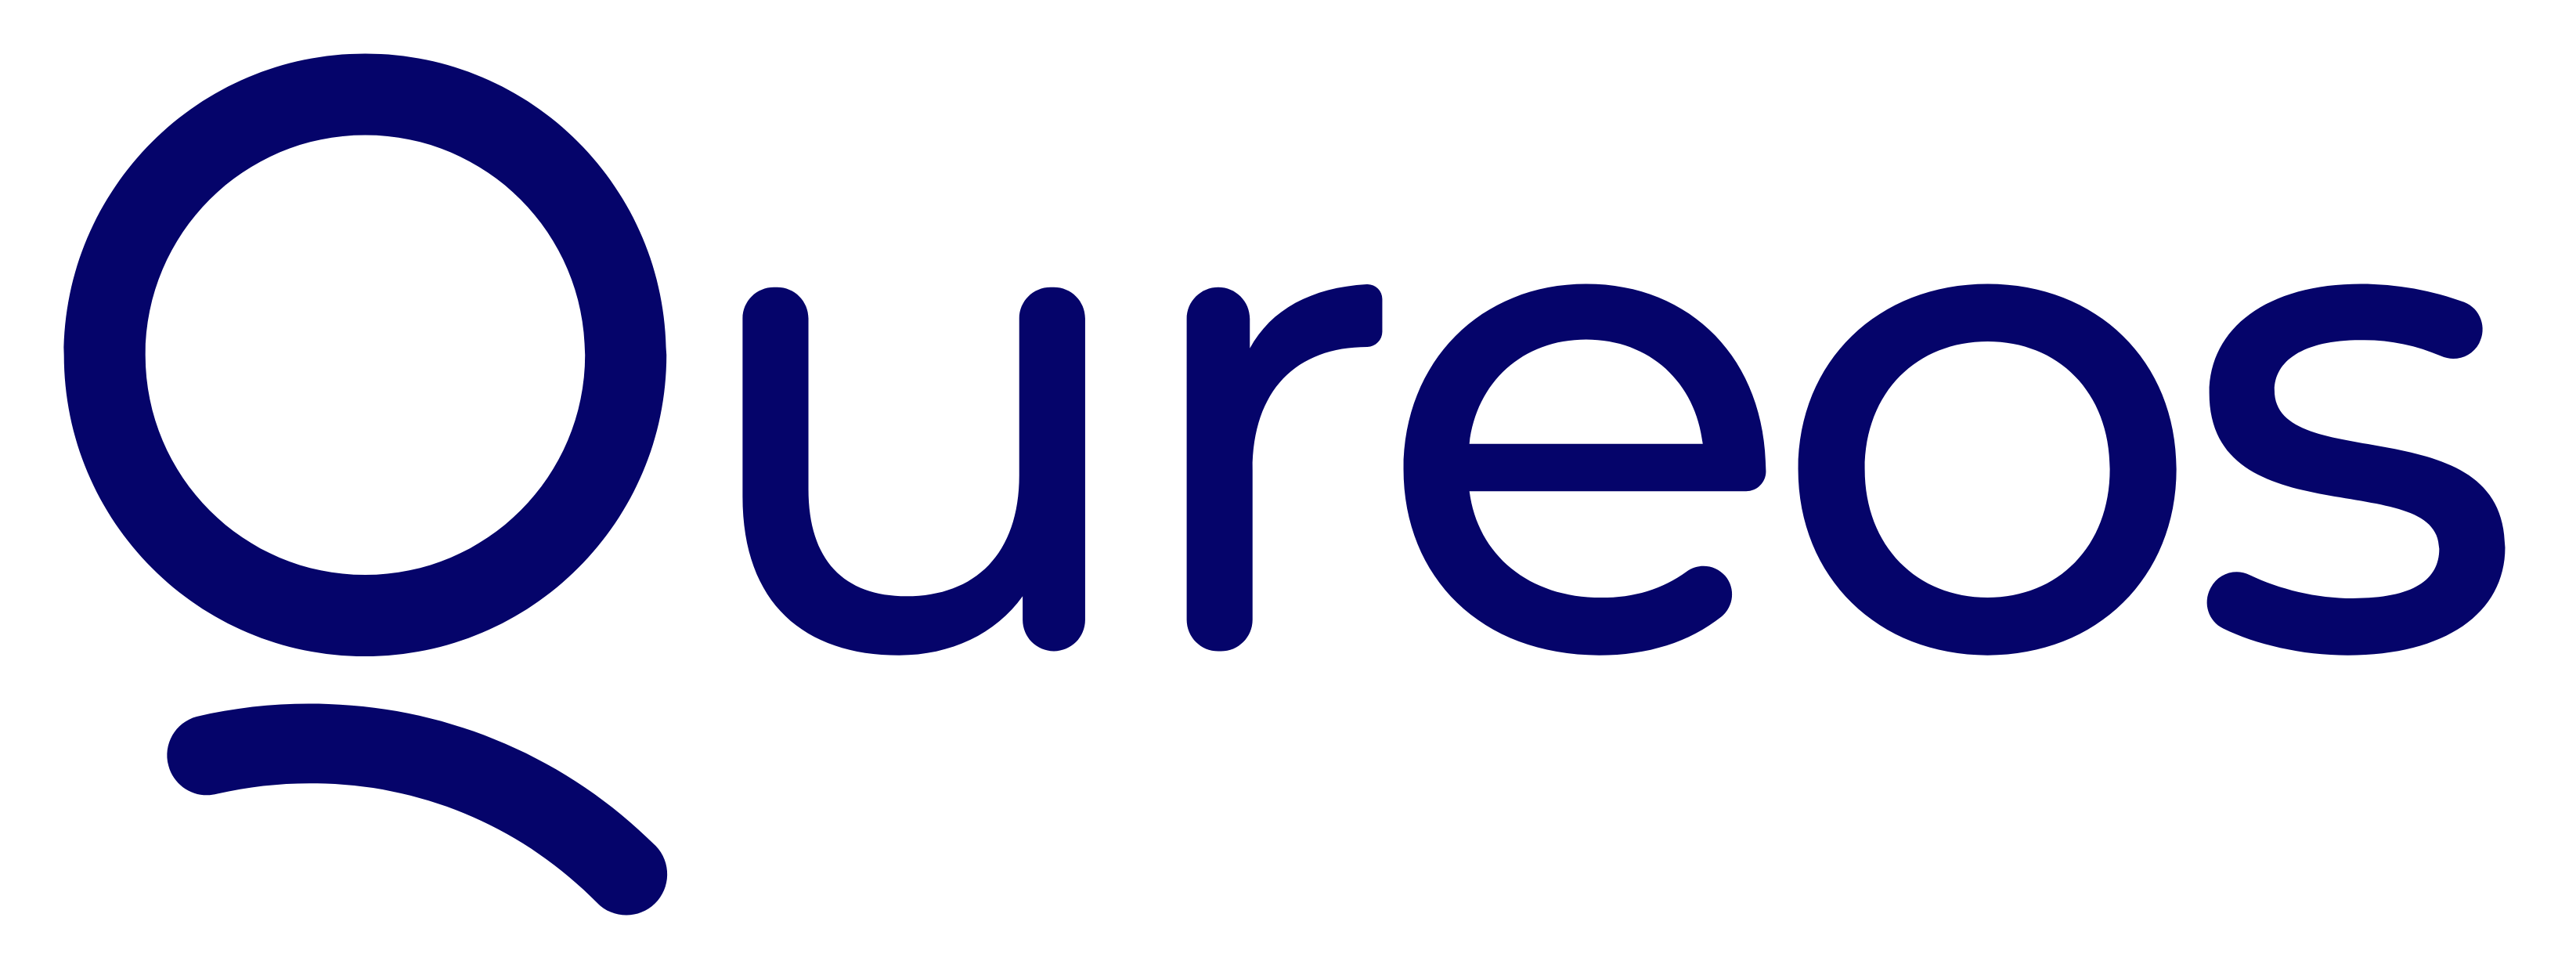 Qureos Logo full